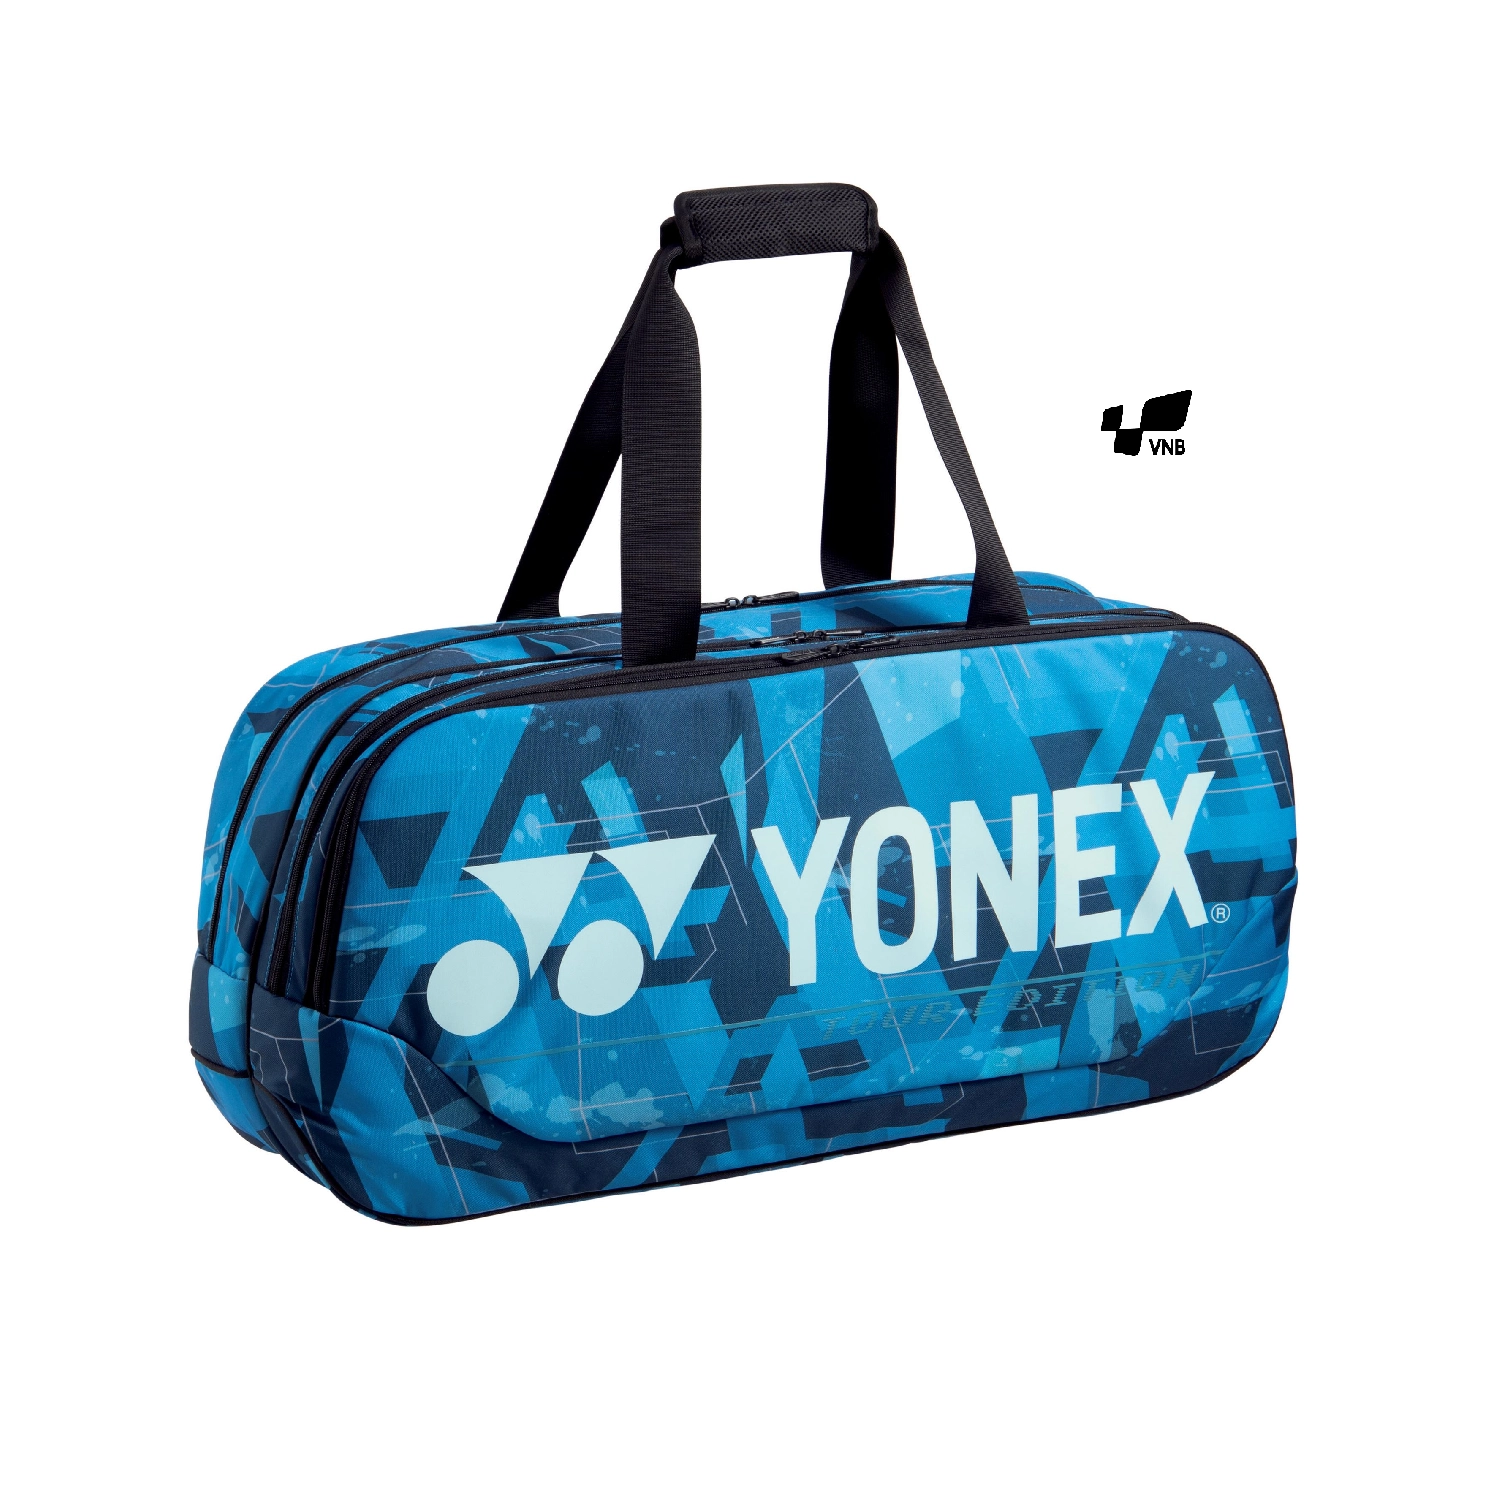 Túi cầu lông Yonex BA 92031WEX - Xanh dương 2021